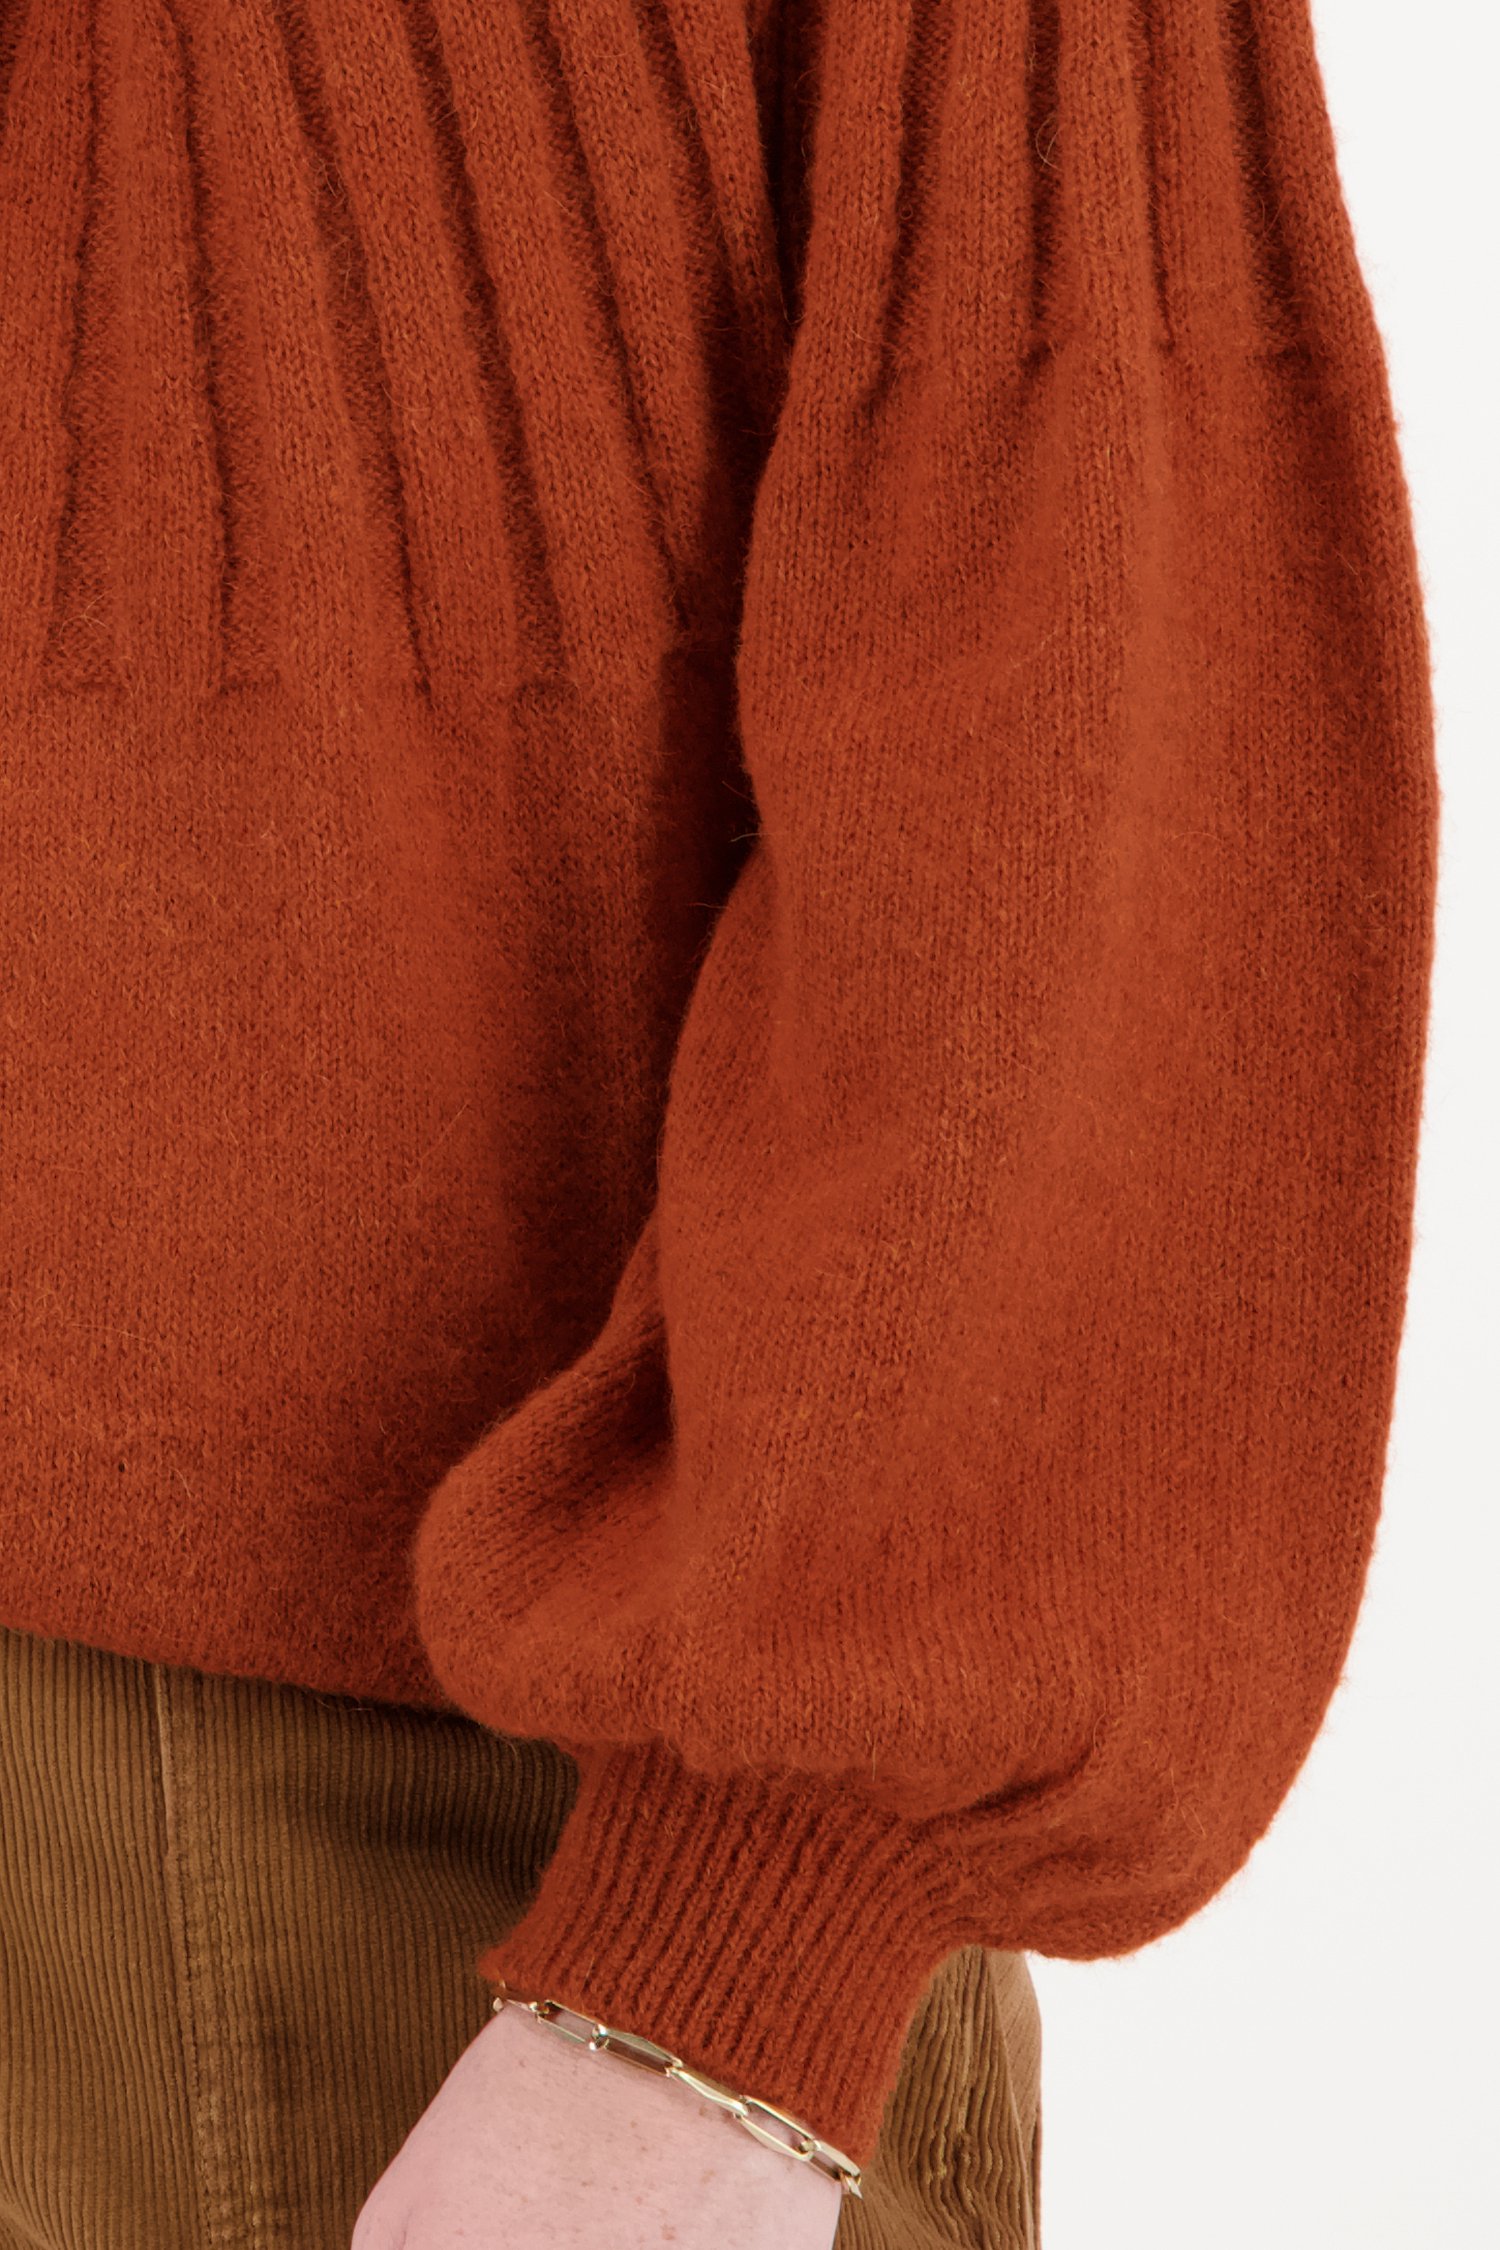 Roestkleurige trui met kraag van Libelle voor Dames